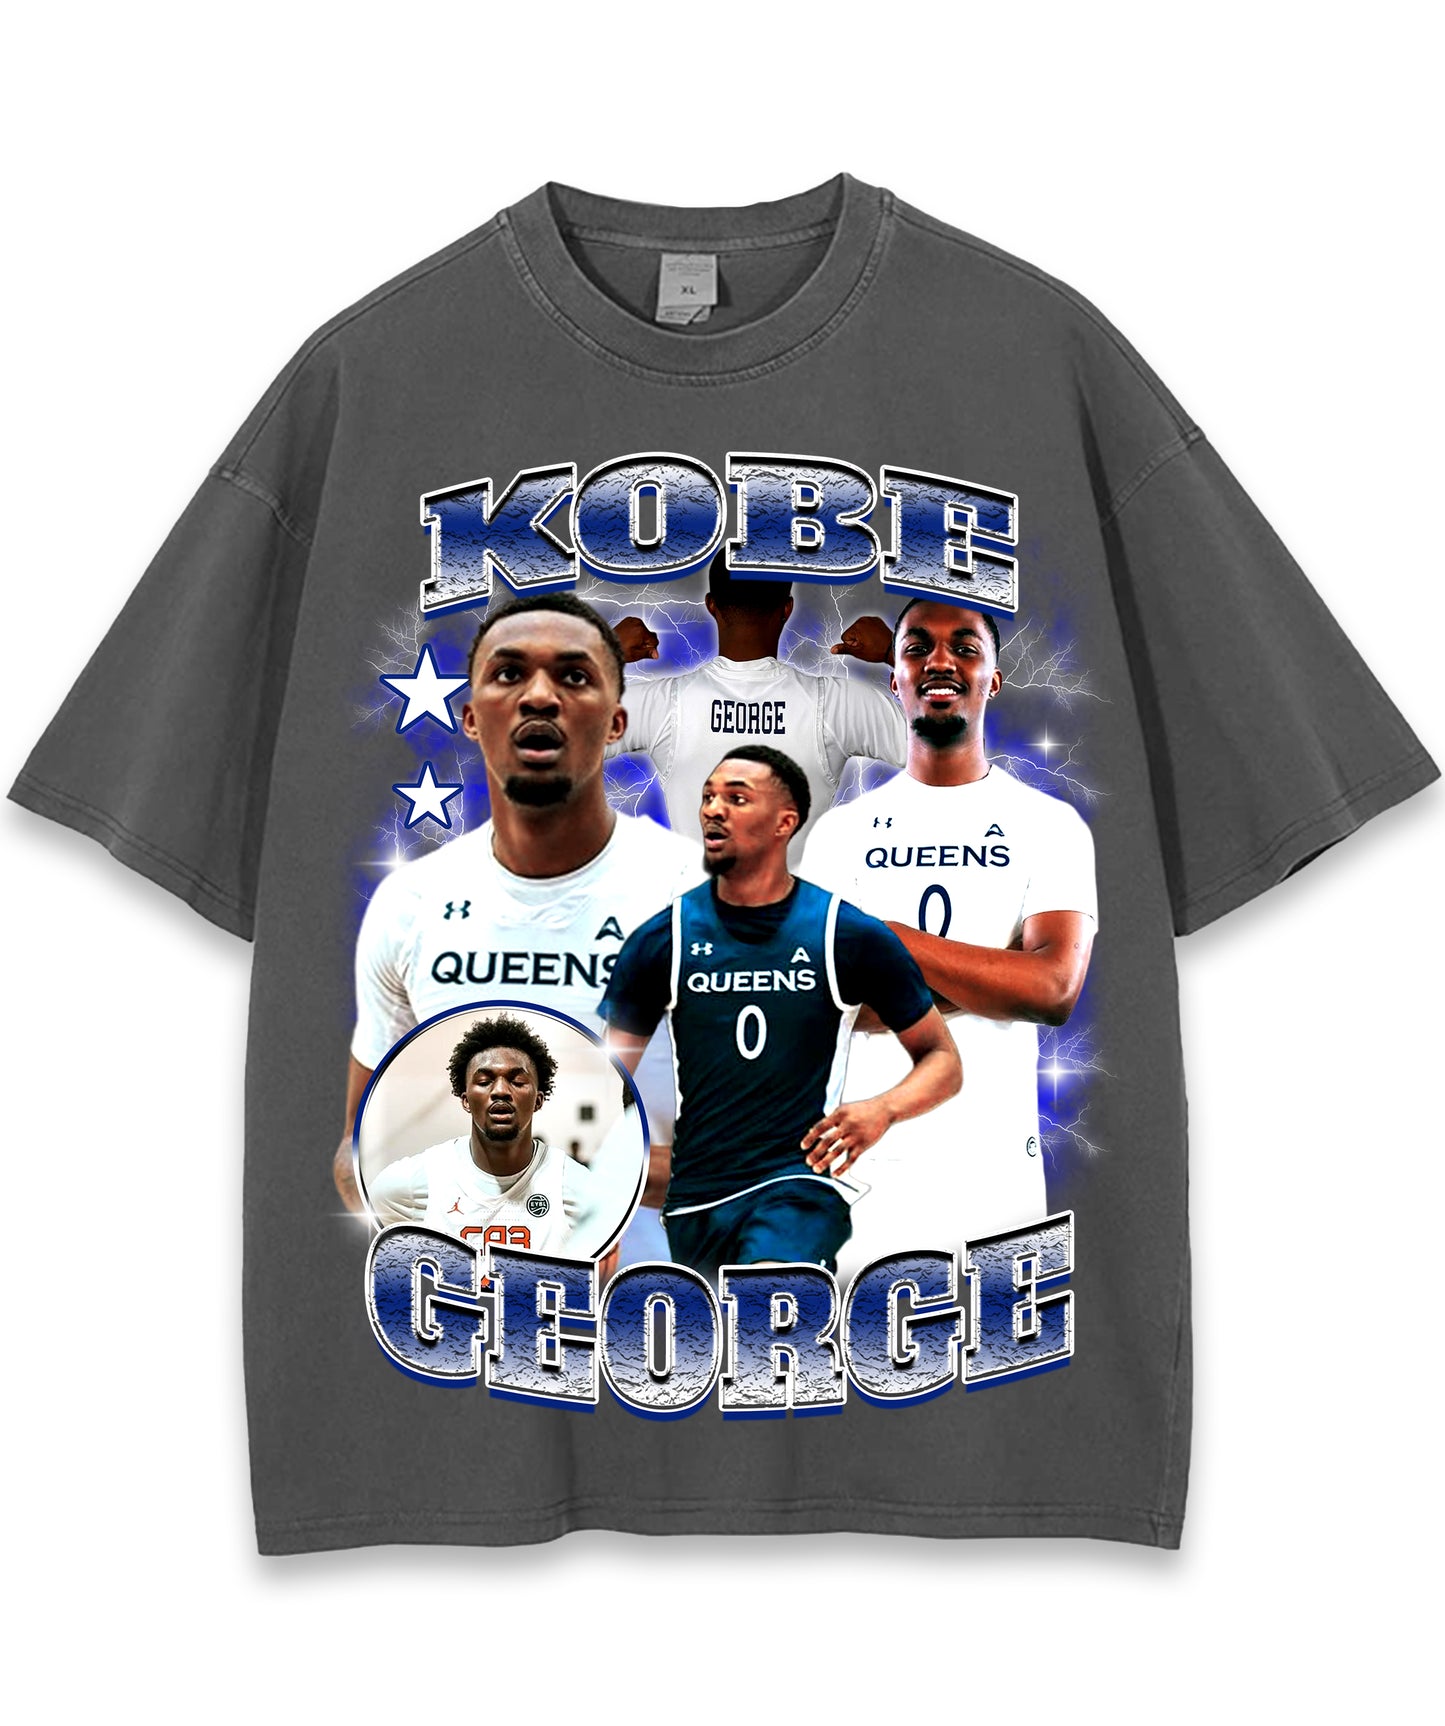 Kobe George Graphic T-shirt